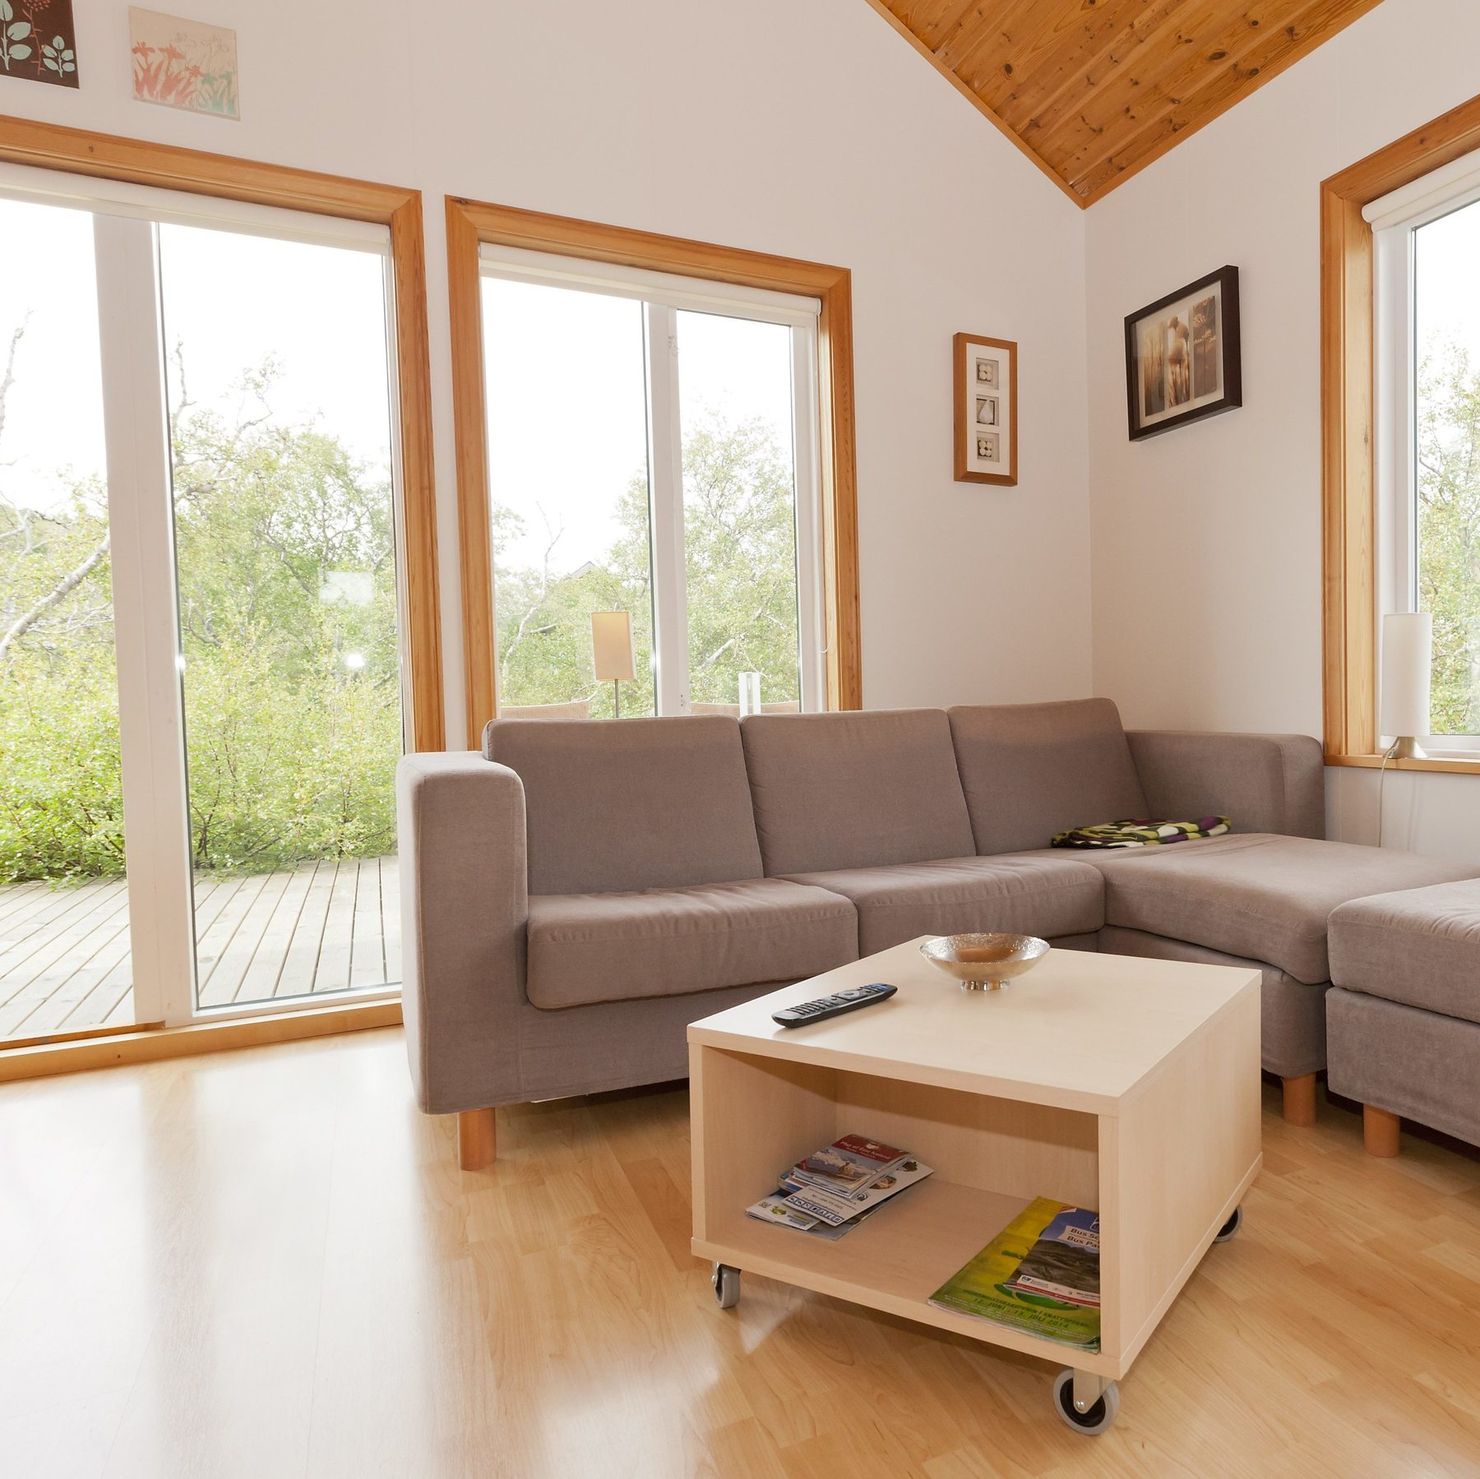 Das Wohnzimmer ist hell mit großen Fenstern und einer bequemen Couch ausgestattet